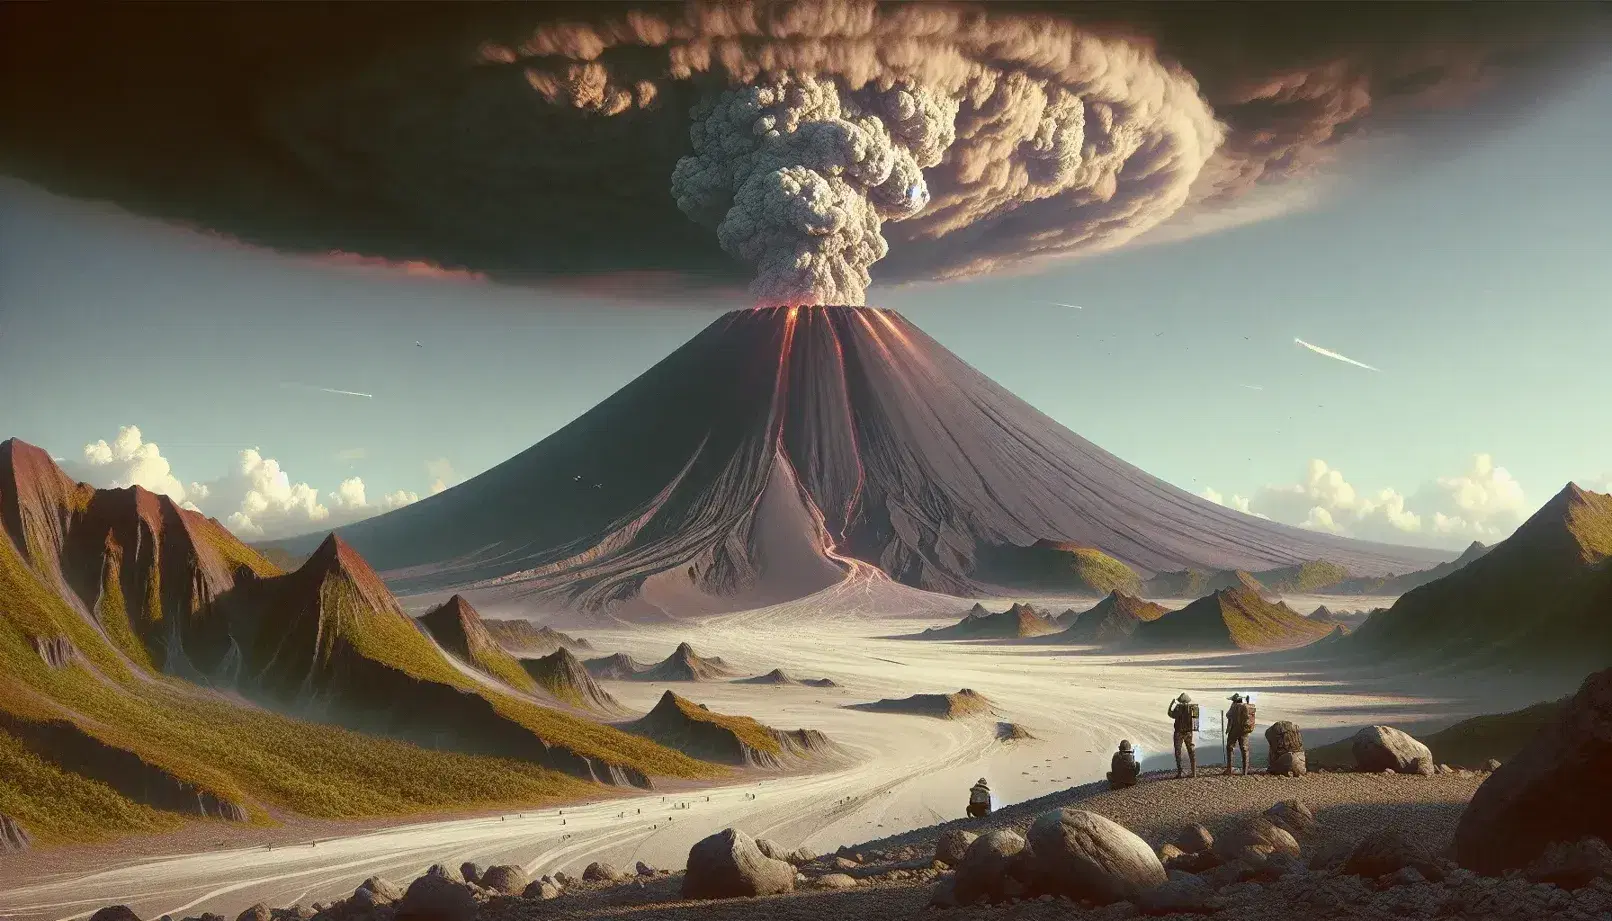 Volcán en erupción con columna de humo y ceniza, flanco rojizo y observadores con cascos al frente en paisaje natural.